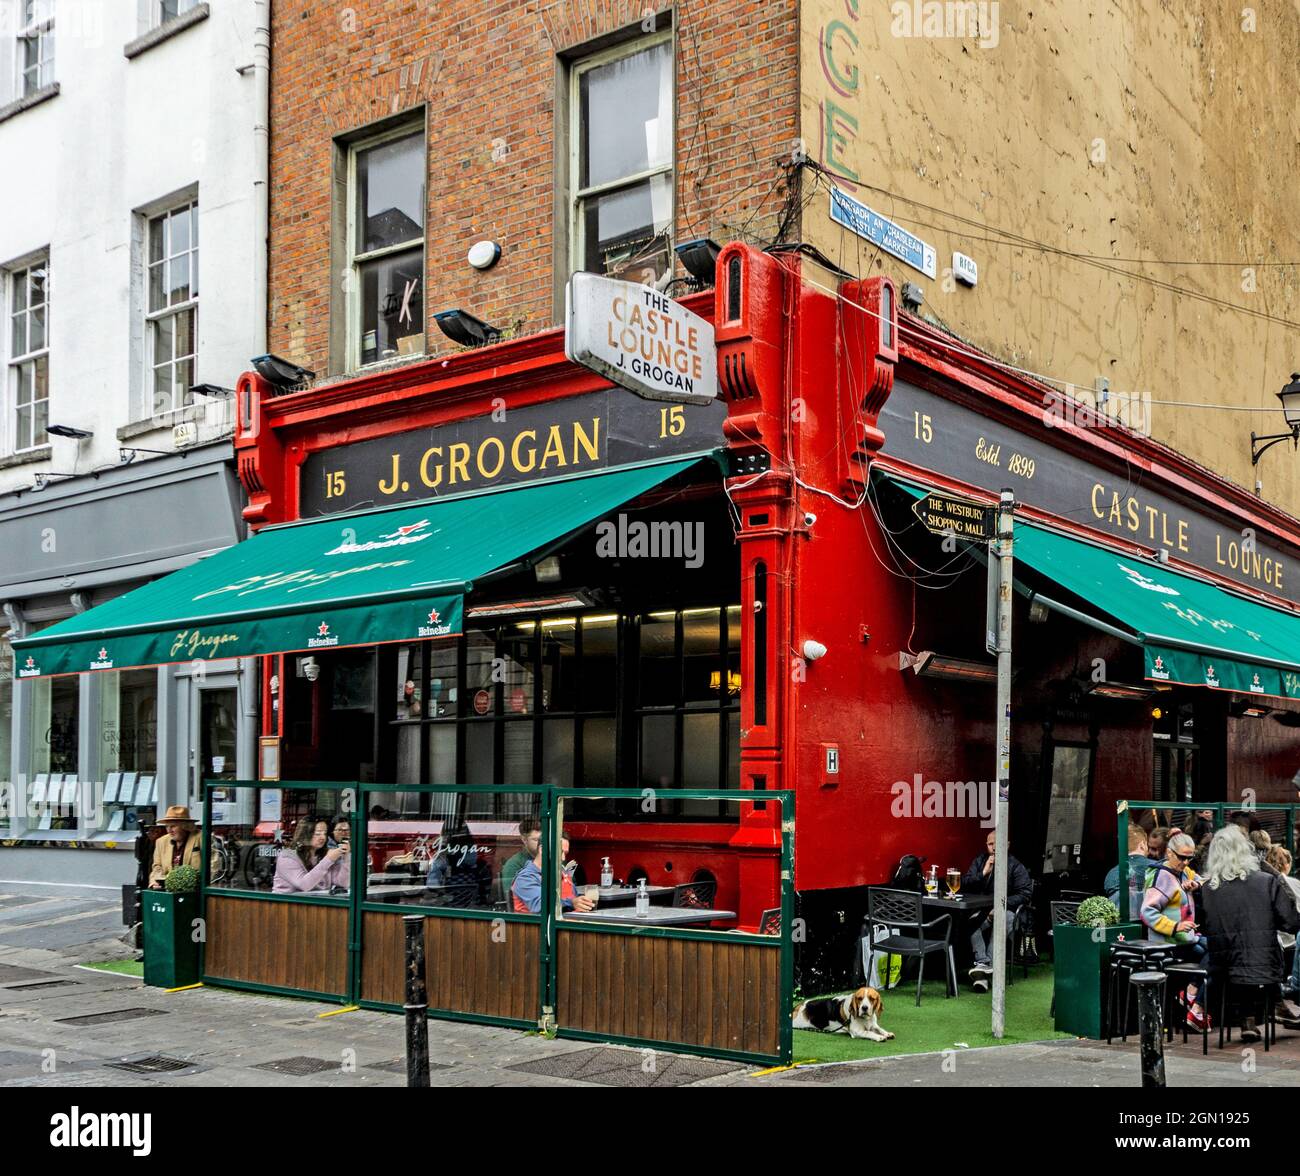 Grogan's Castle Lounge, Sth William Street una volta un ben noto ritrovo di una letteraria e artistica la serie è uno di Dublino più popolare pub. Foto Stock